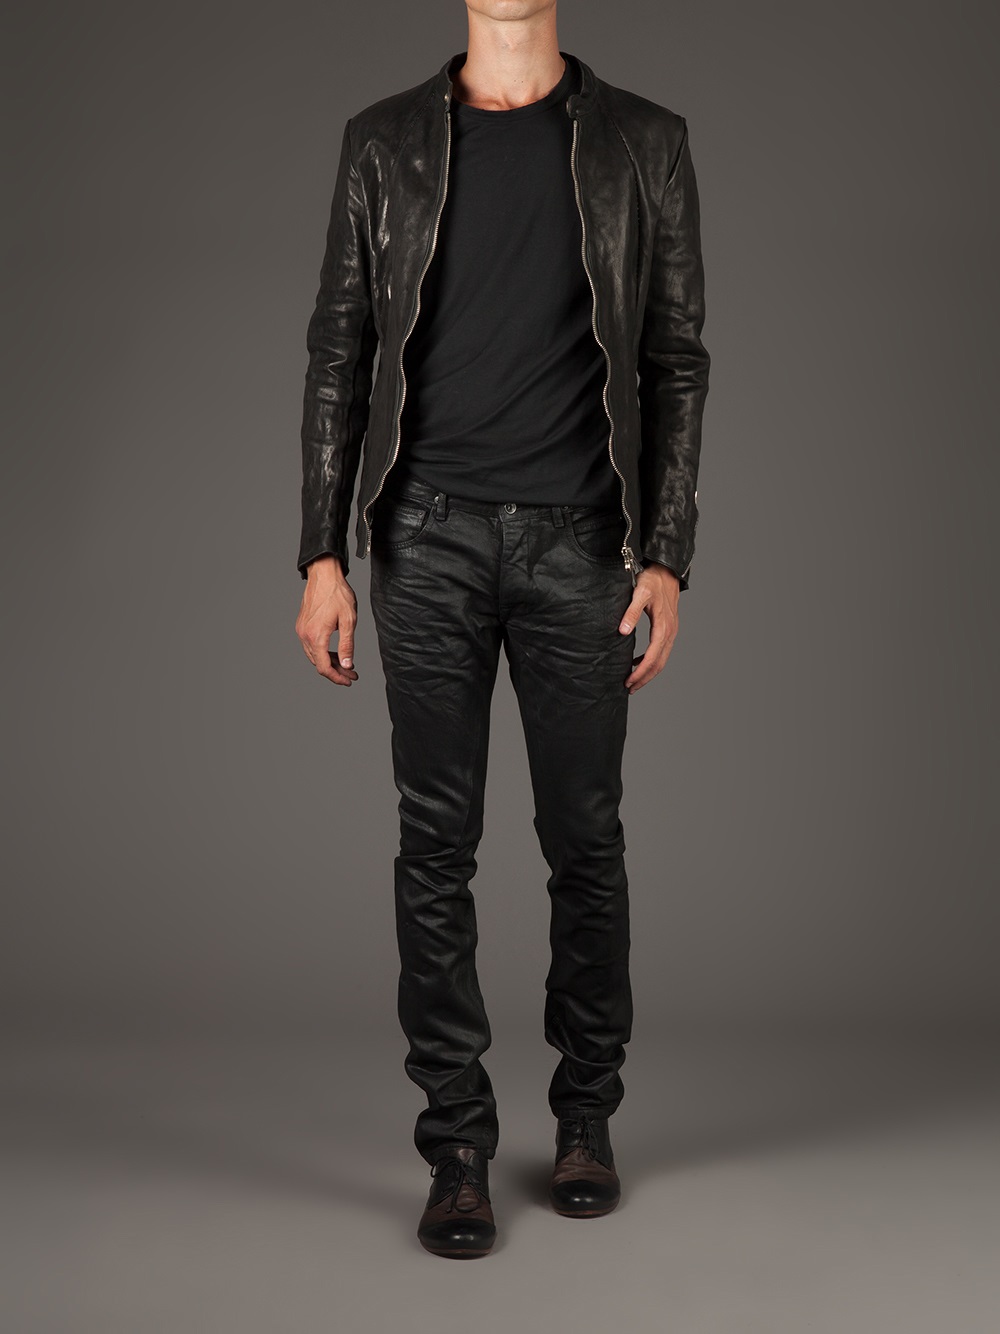 https://cdna.lystit.com/photos/2013/09/21/incarnation-black-washed-leather-jacket-product-3-13628810-705401593.jpeg